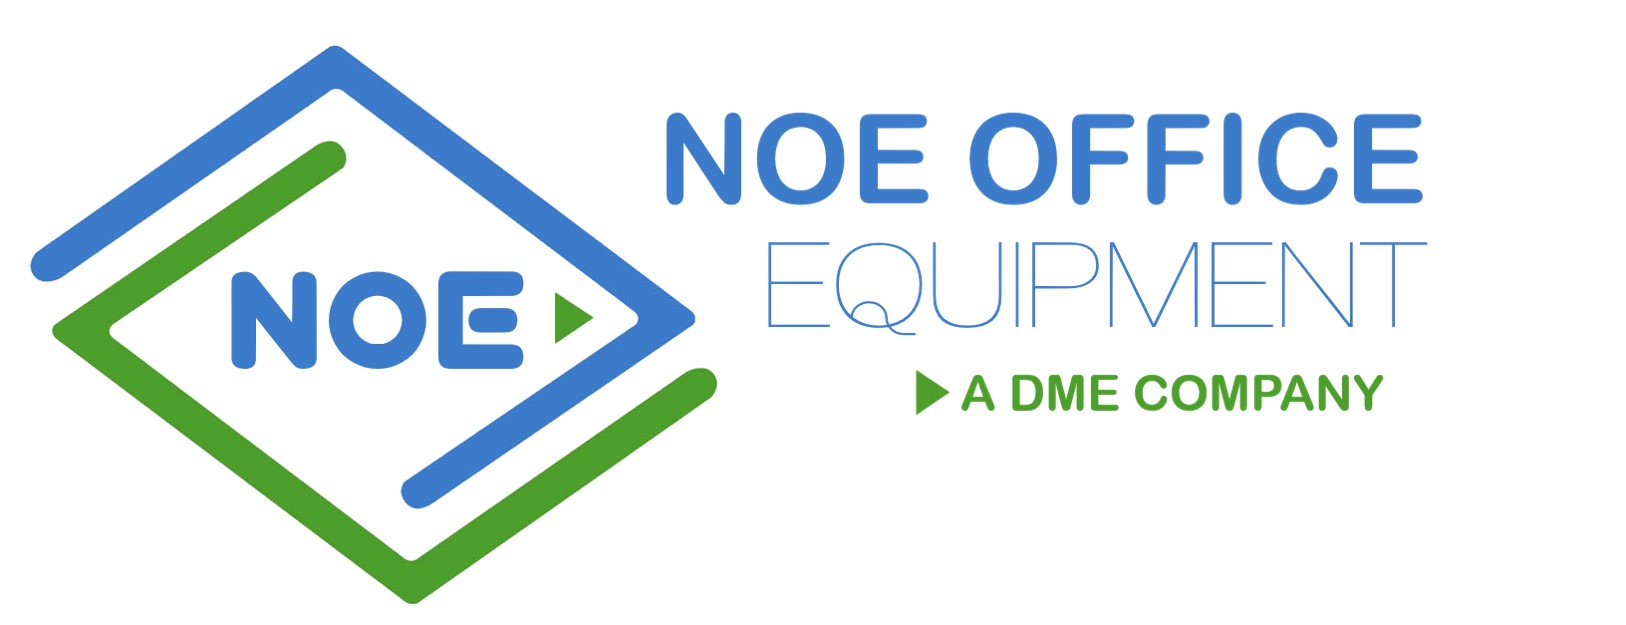 NOE Office Equipment Open House/Rebranding Celebration